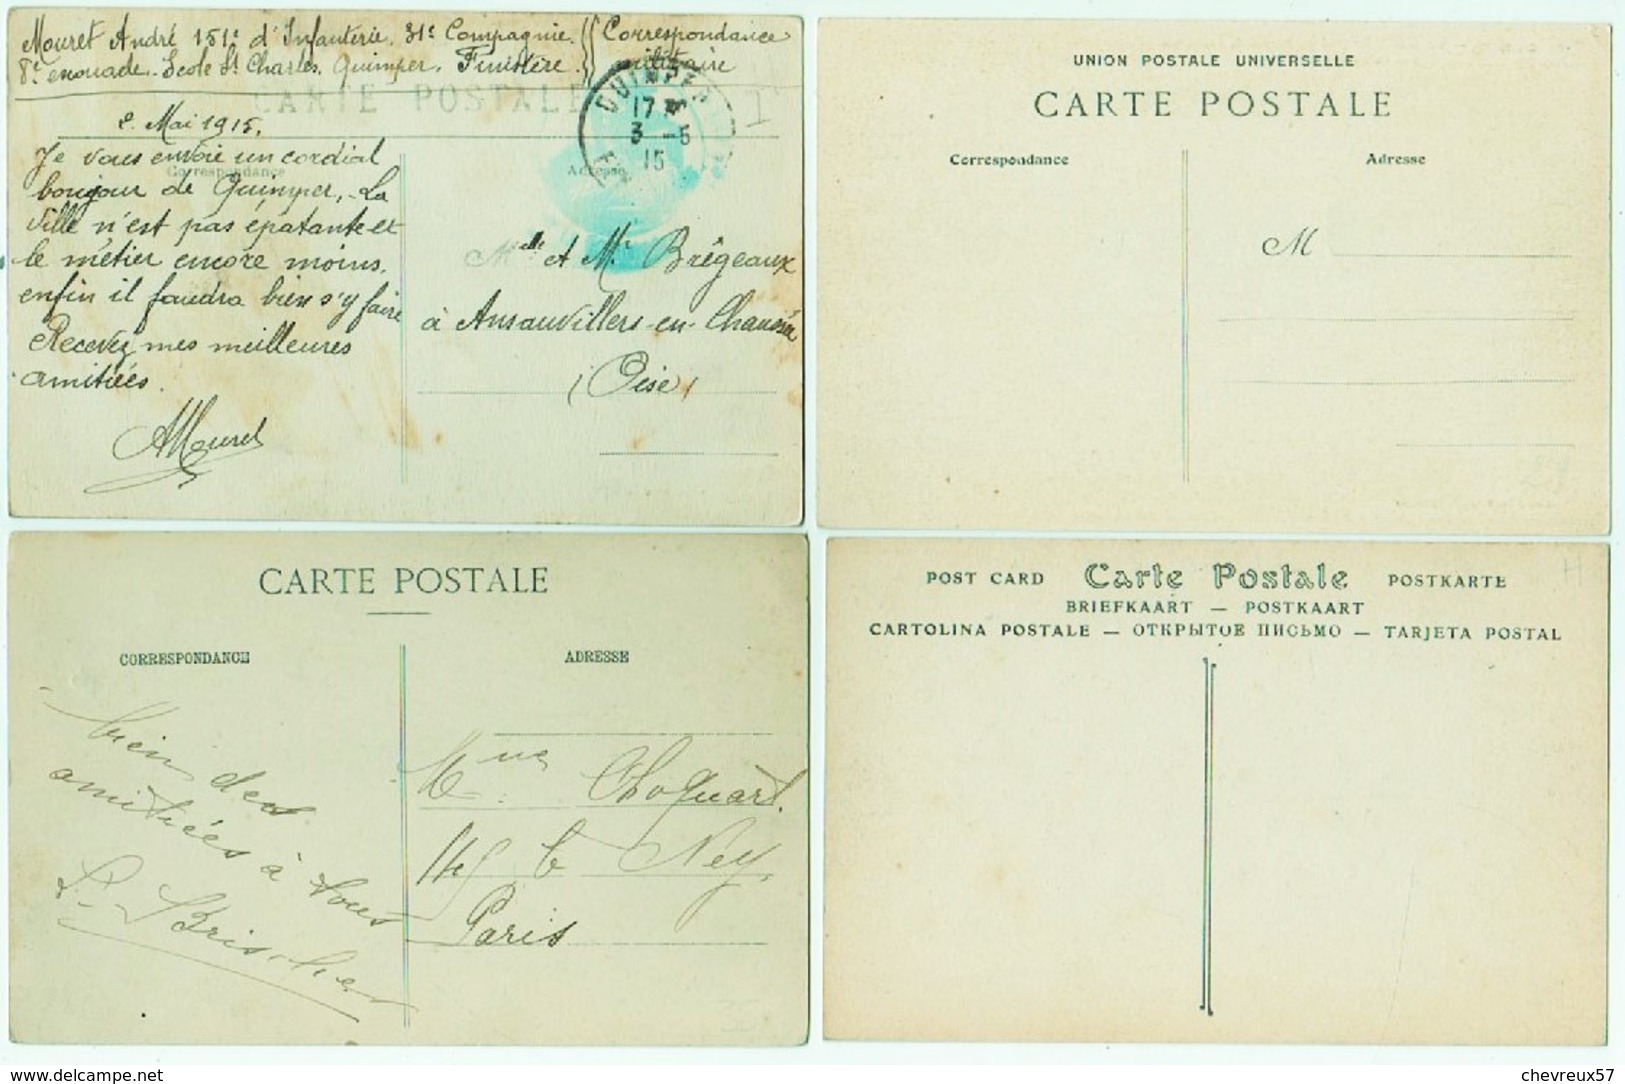 VILLES ET VILLAGES DE FRANCE - LOT 24 - 34 Cartes anciennes et 1 carte lettre- Bretagne -